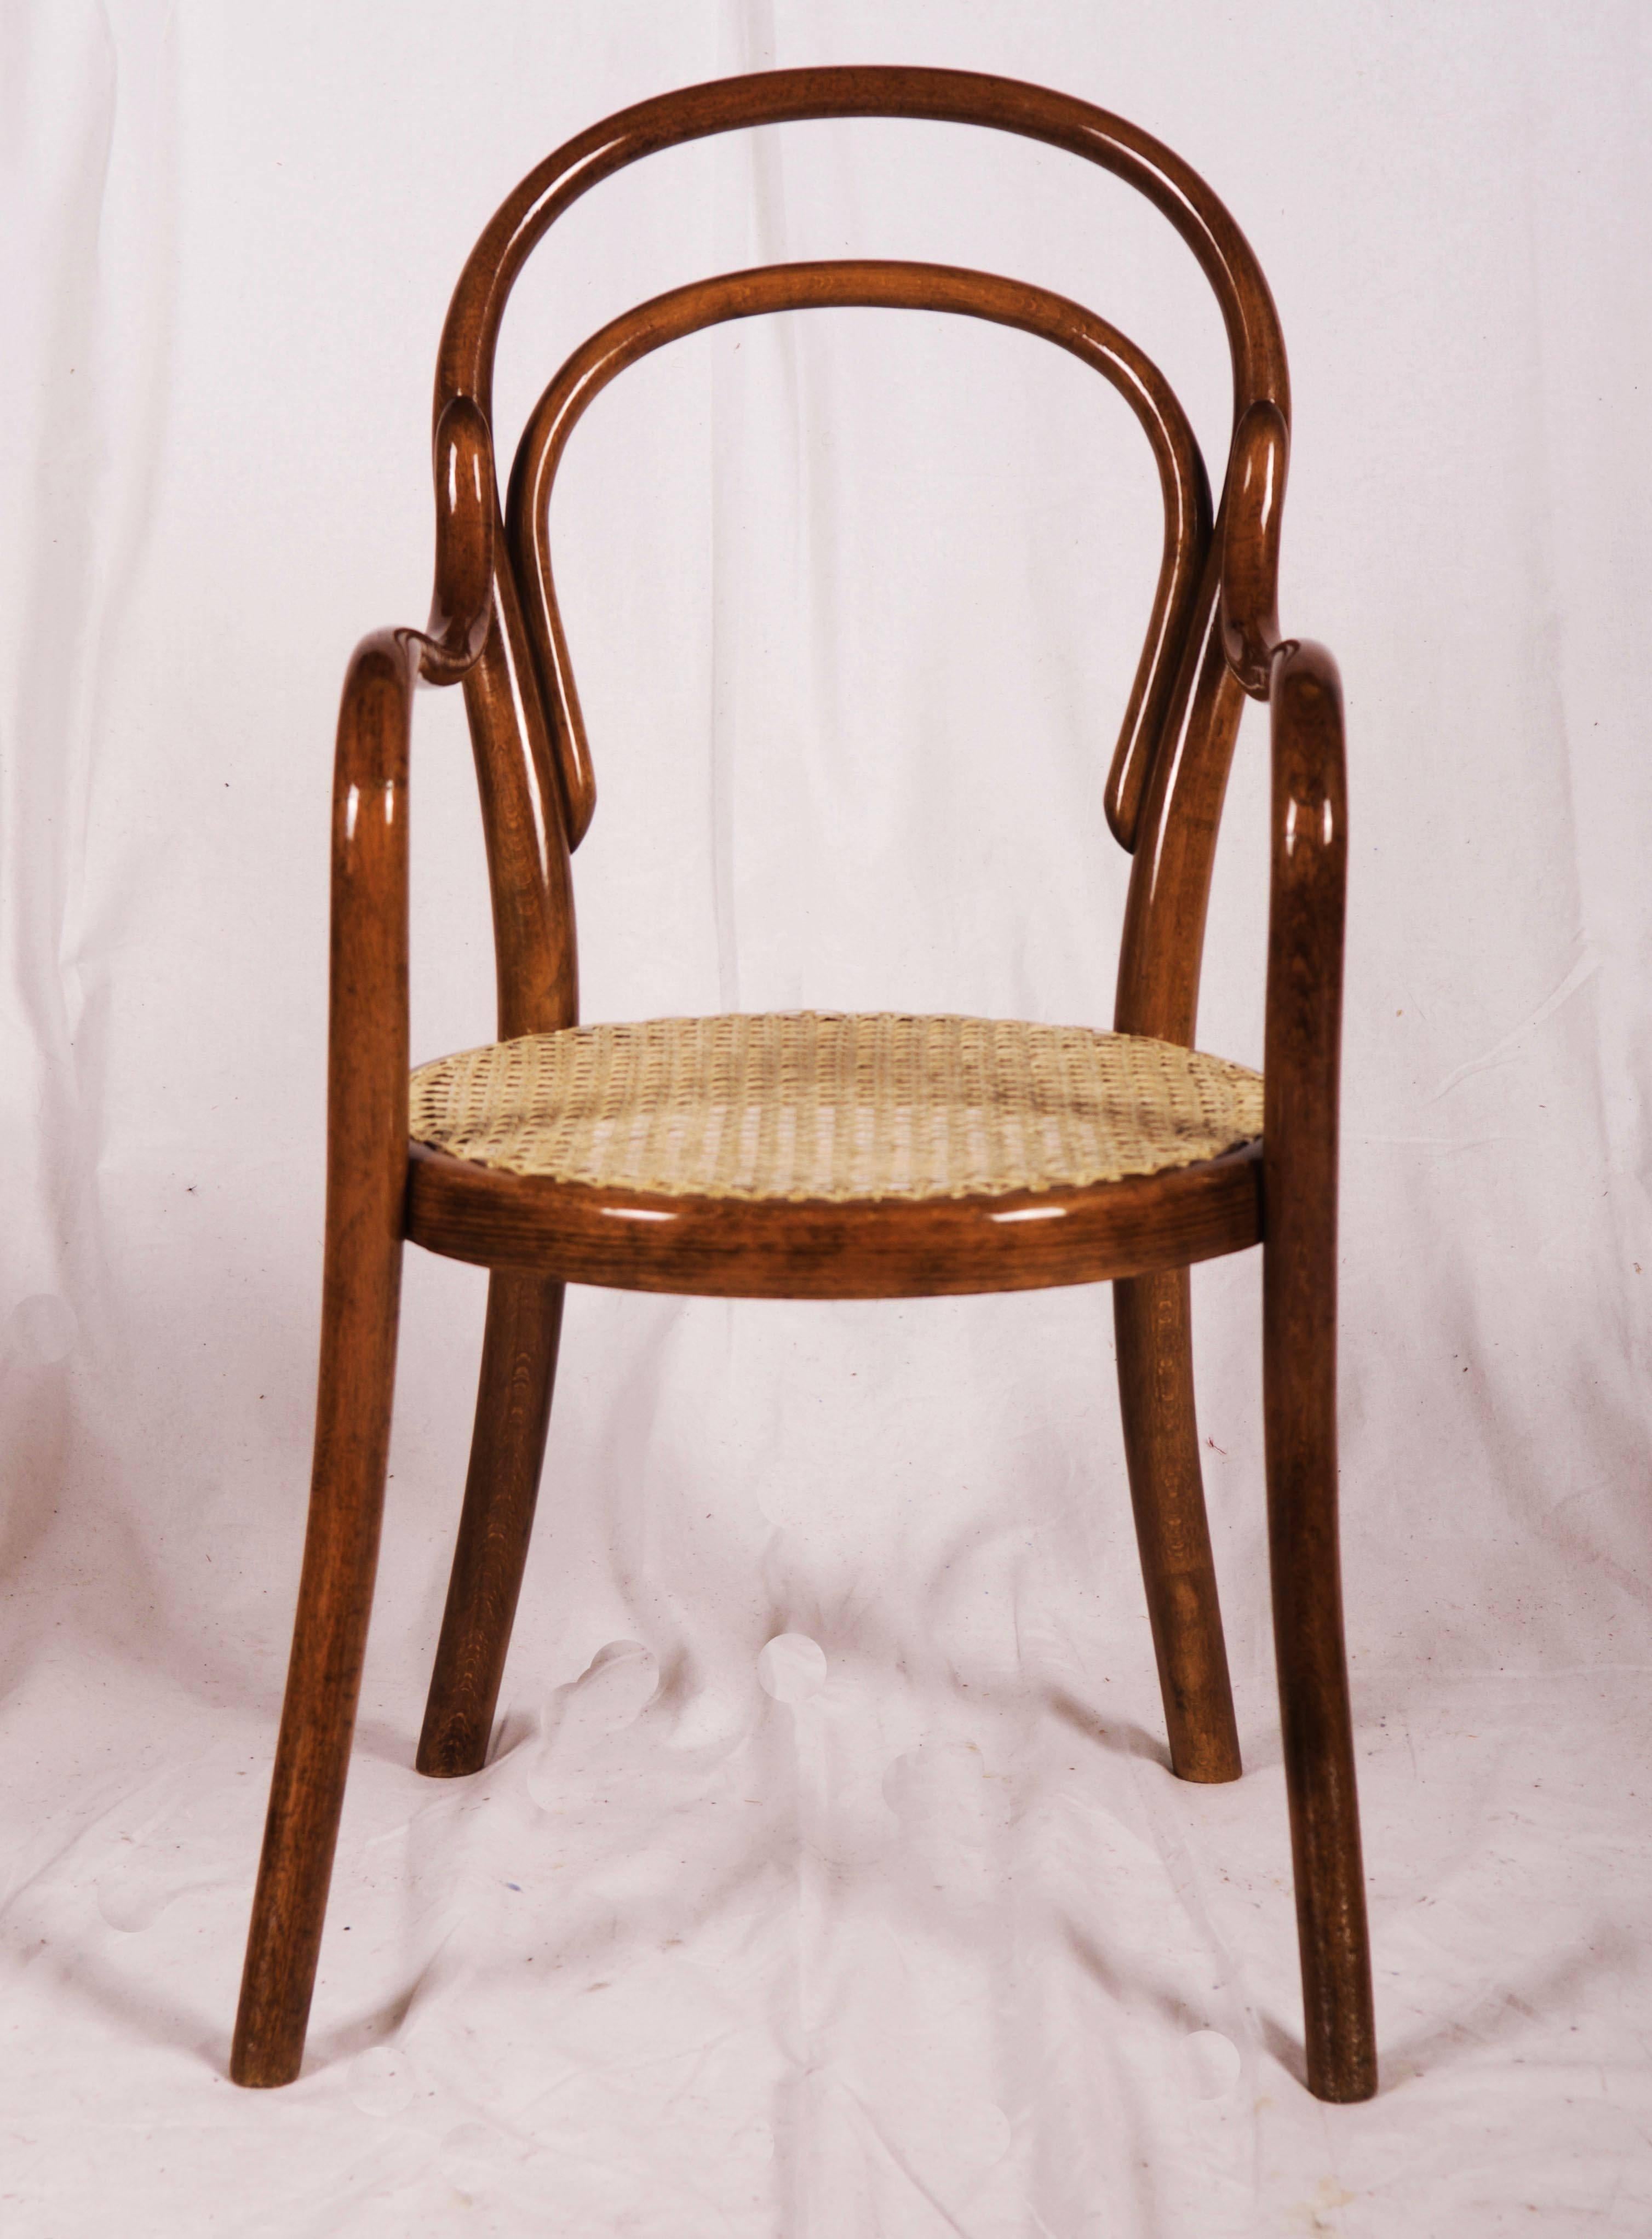 Buche Bugholz Thonet Nr. 1 zum ersten Mal im Katalog aus den 1880er Jahren erwähnt. Diese stammt aus den 1910er-1920er Jahren.
Stuhl ist vollständig restauriert, Nussbaum gebeizt und Schellack poliert mit neuen Konserven.
Auf dem Rahmen gesungen.